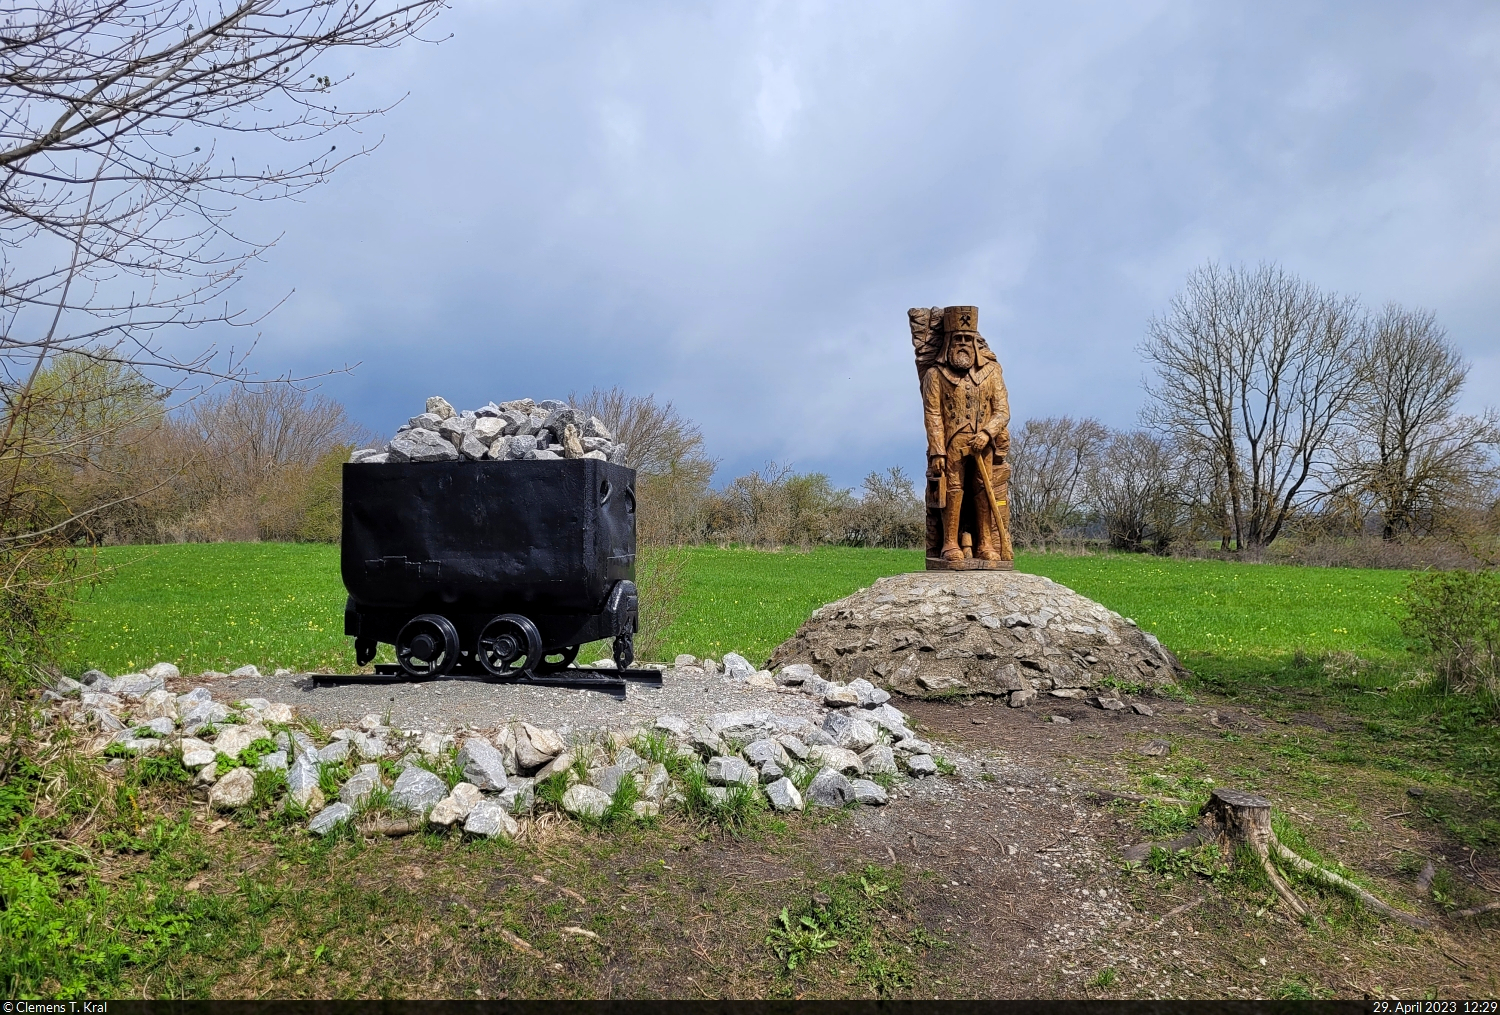 Bergmann als Holzfigur und Lore mit Gestein auf dem Schornsteinberg im Hhlenort Rbeland.

🕓 29.4.2023 | 12:29 Uhr